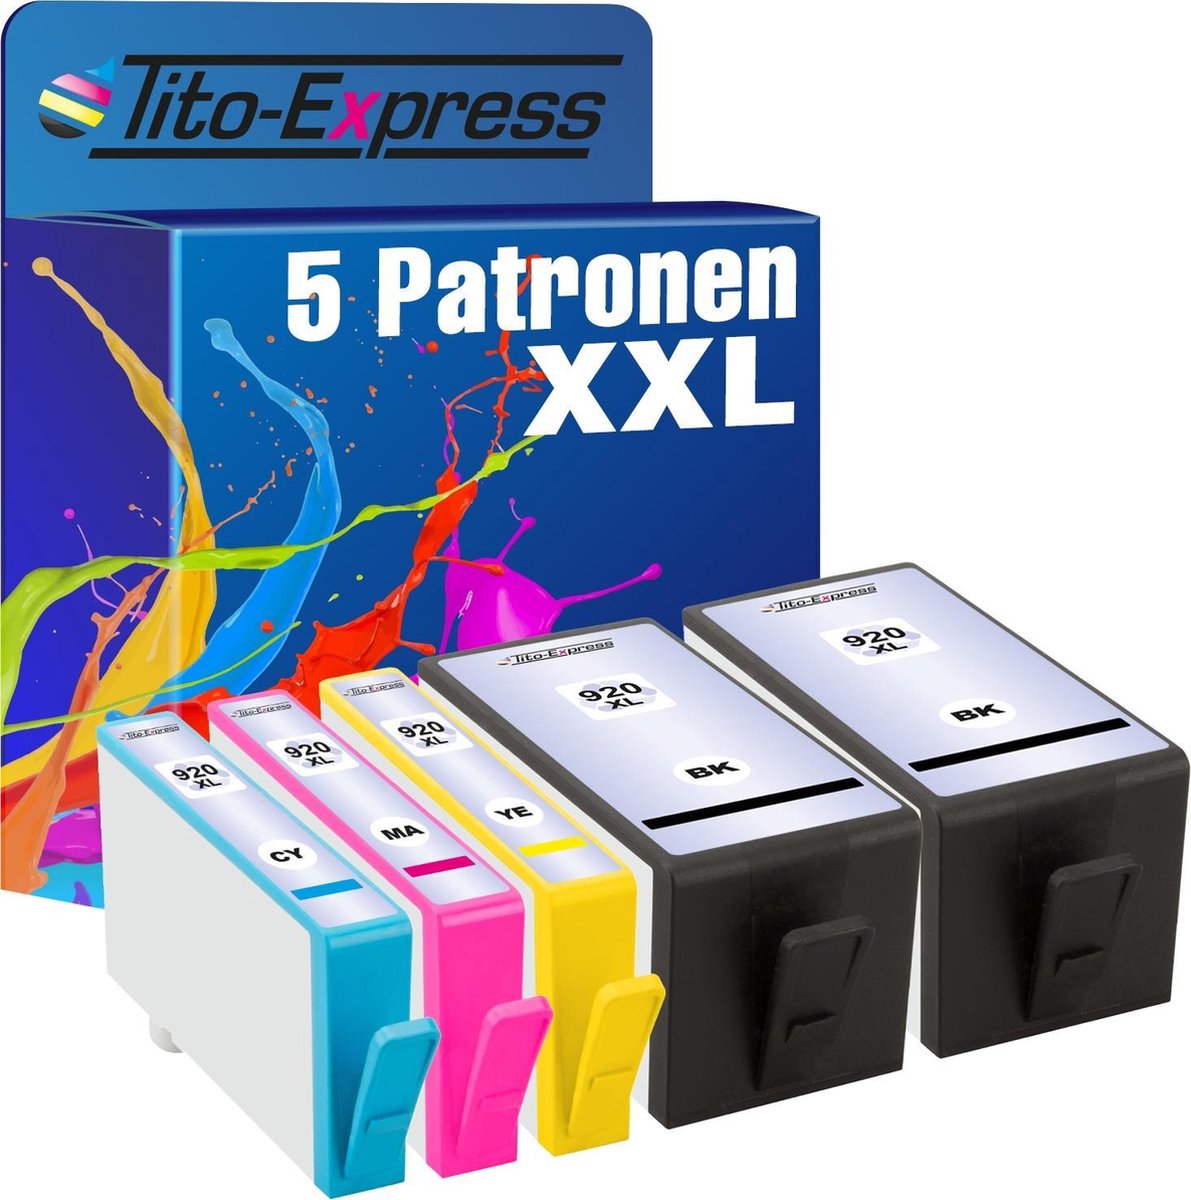 PlatinumSerie 5x inkt cartridge alternatief voor HP 920 XL - Tito-EXpress